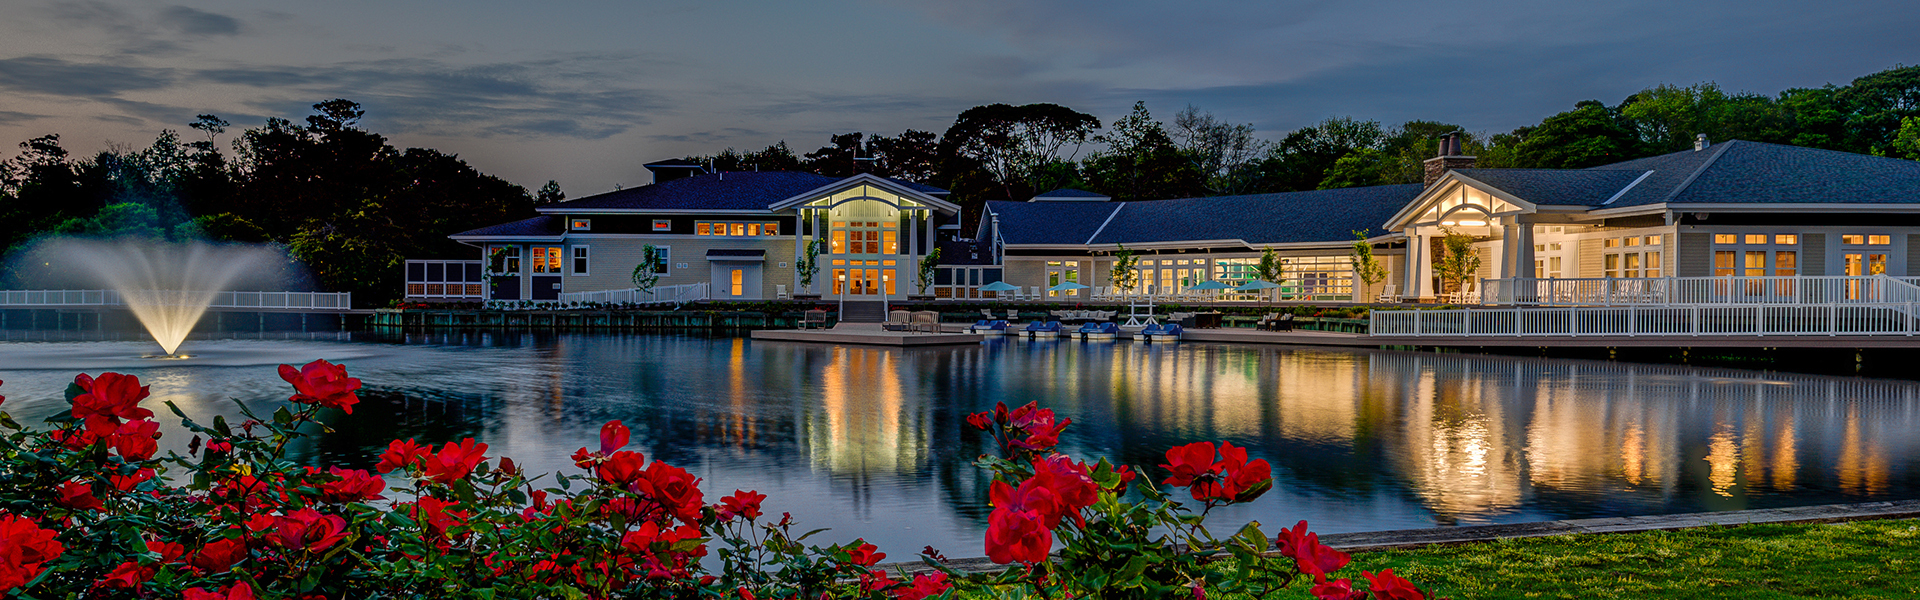 Photo of Beachwoods Resort, Kitty Hawk, NC